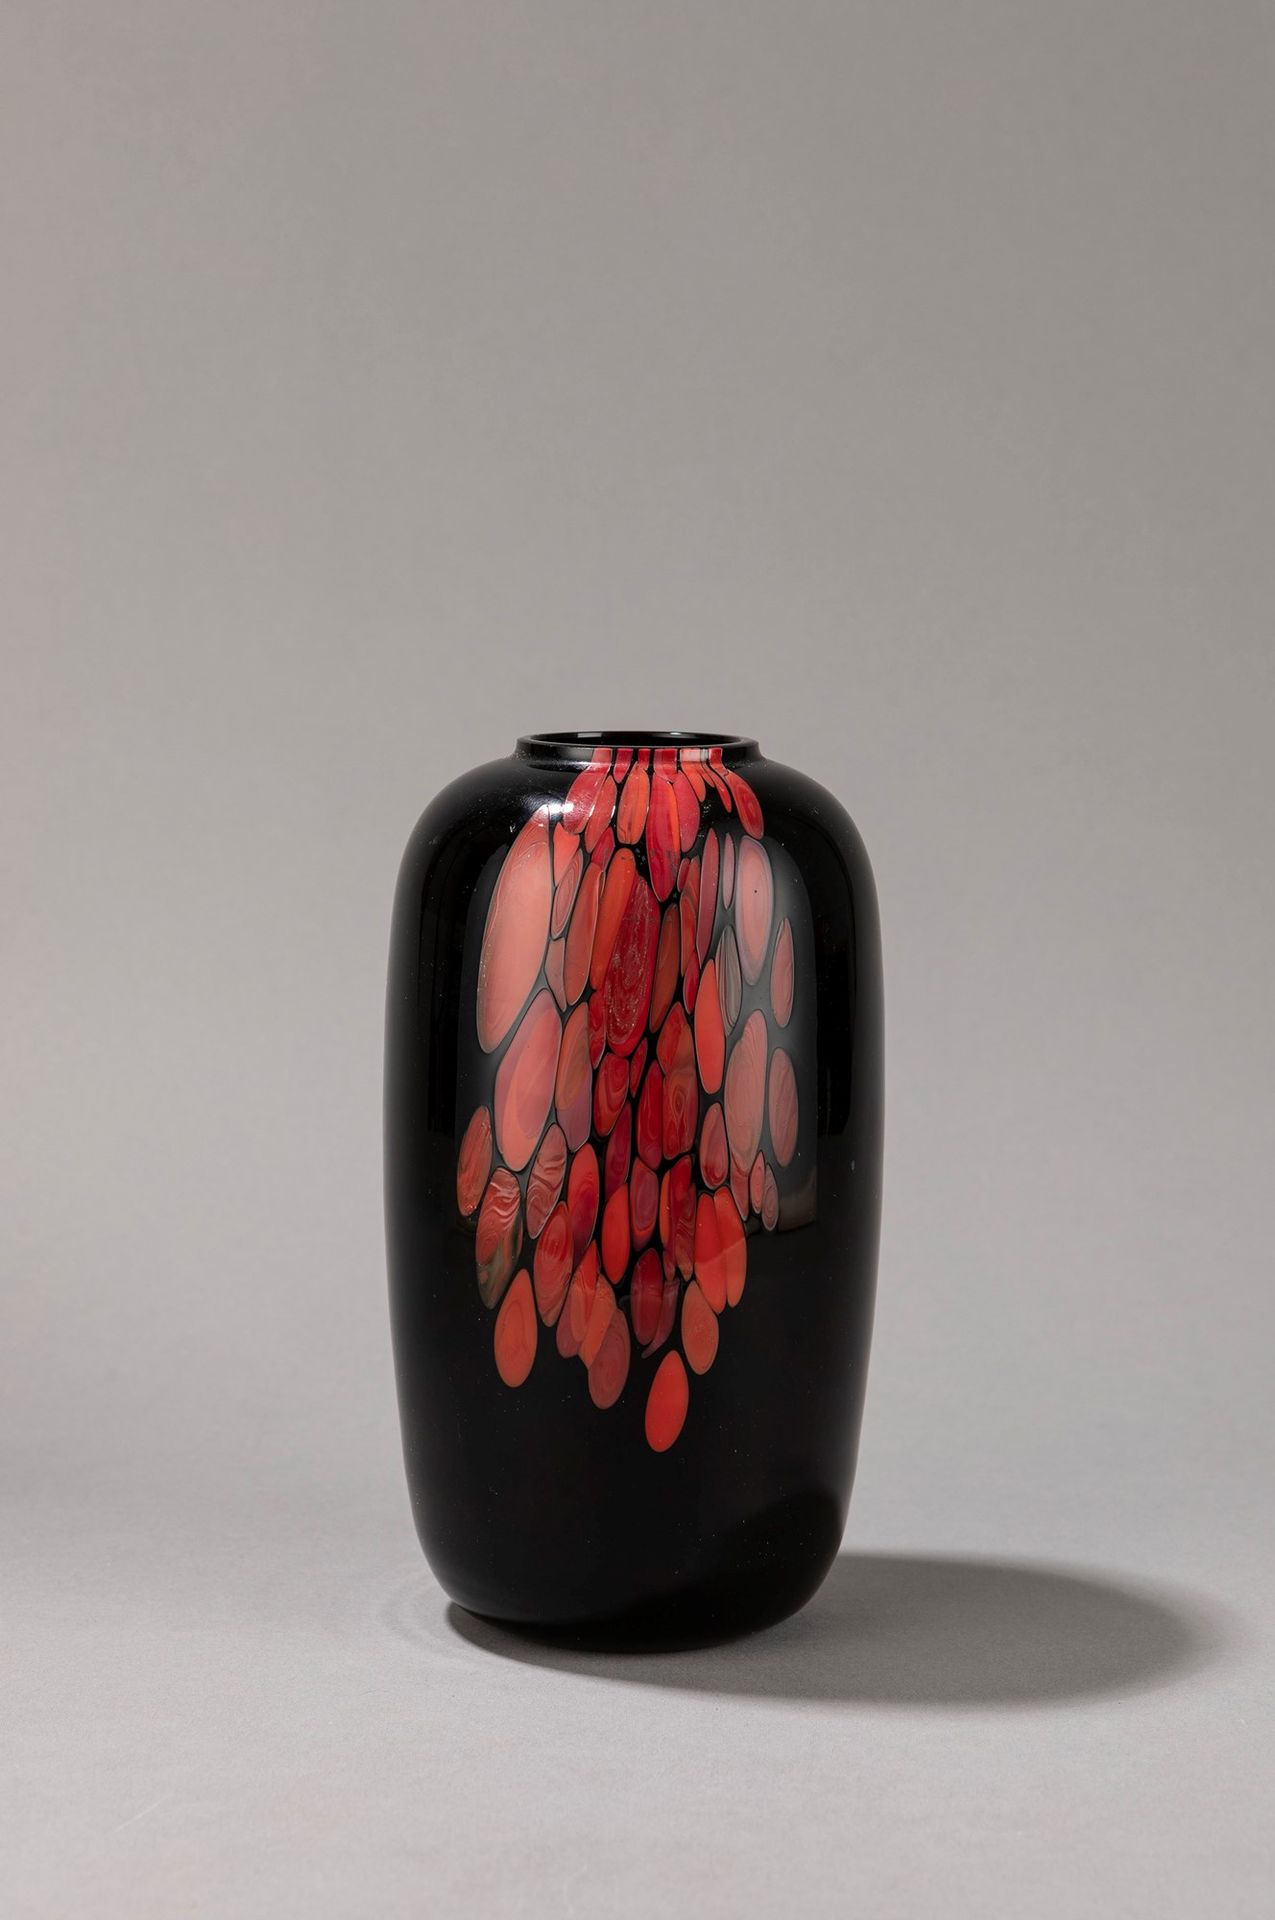 VENINI 花瓶，1980年左右

h 19 x 10 cm
黑色玻璃，红色装饰。

底座下有刻字标志